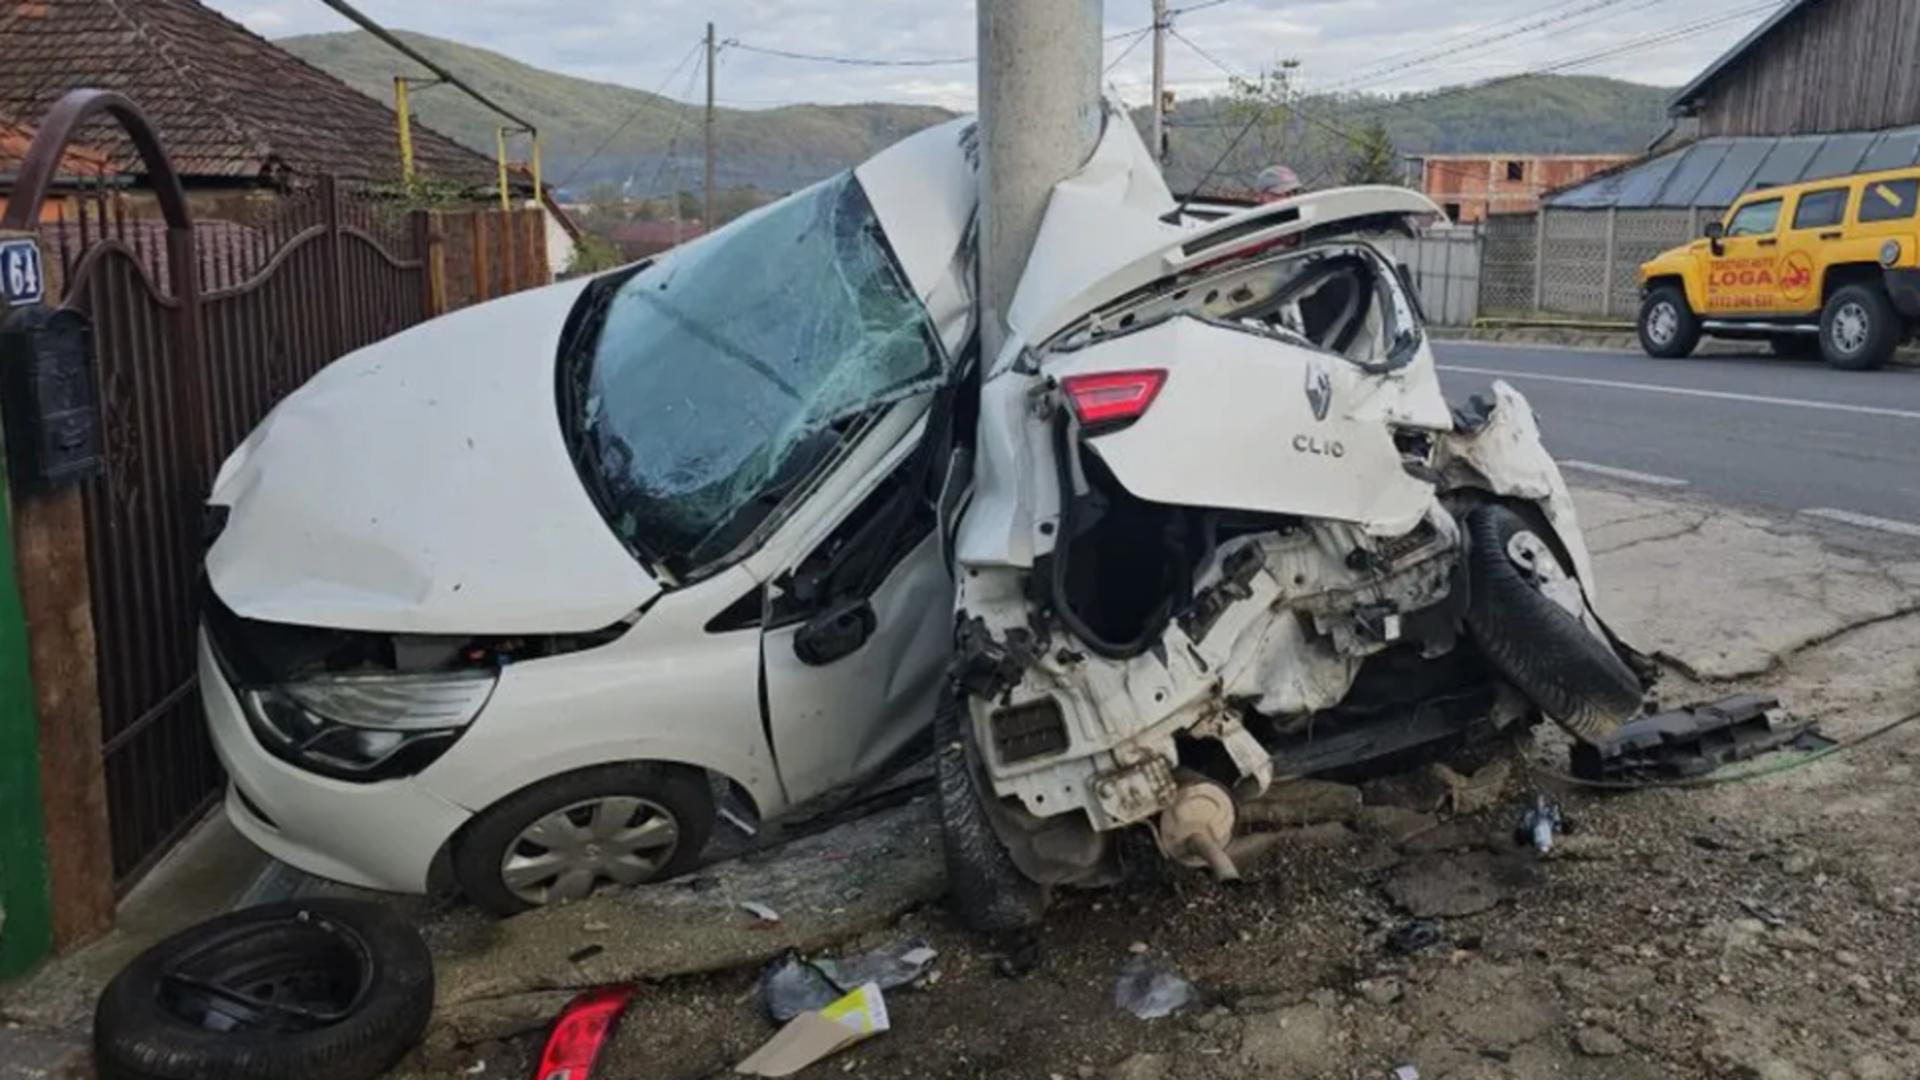 Mașină încolăcită pe stâlp, după ce a fost lovită de un șofer începător cu BMW